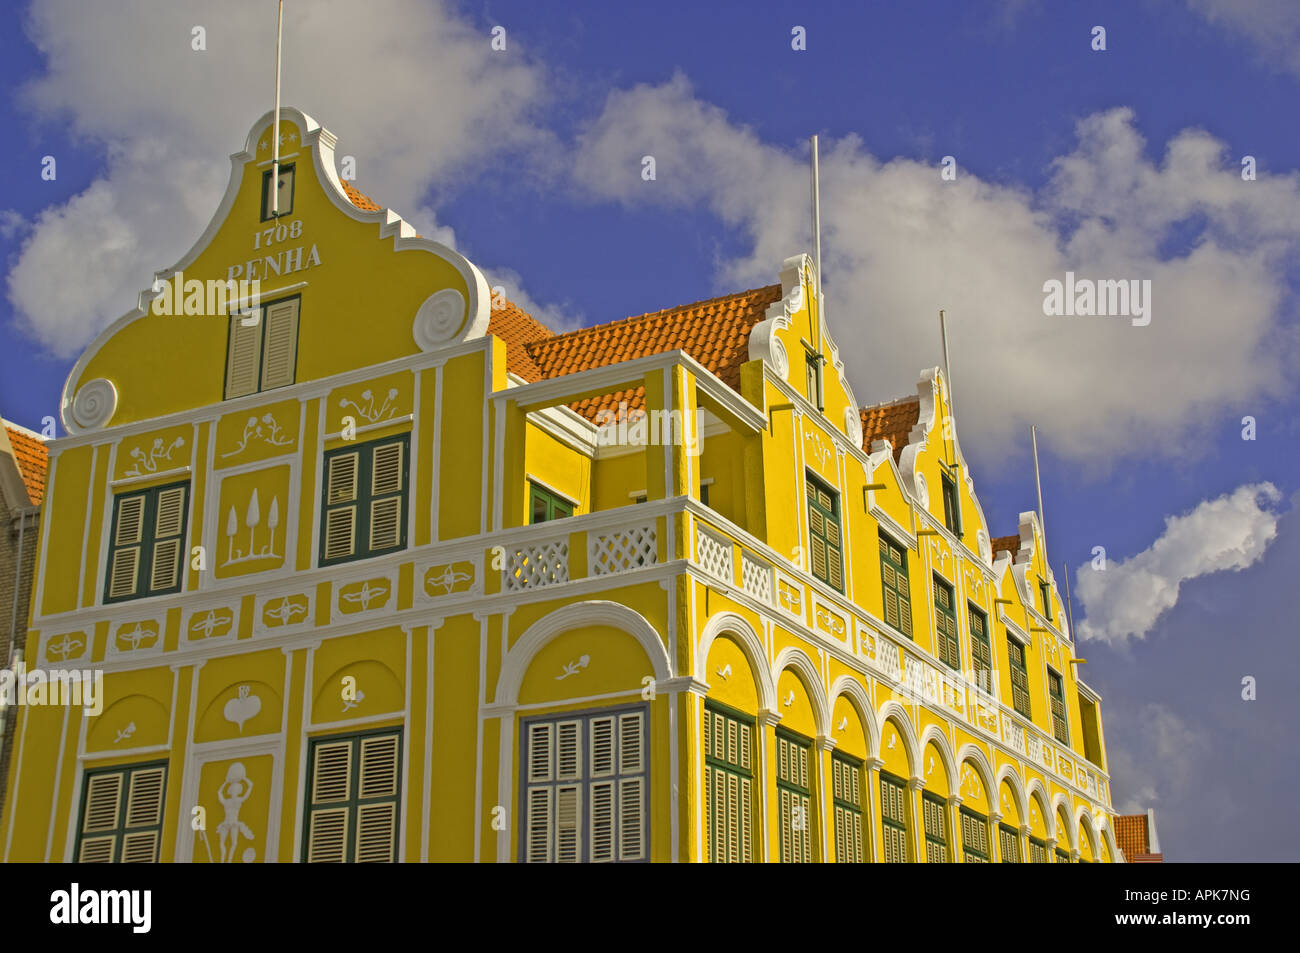 Willemstad est au bord de l'architecture néerlandaise Punda pastel sur la Handelskade Banque D'Images